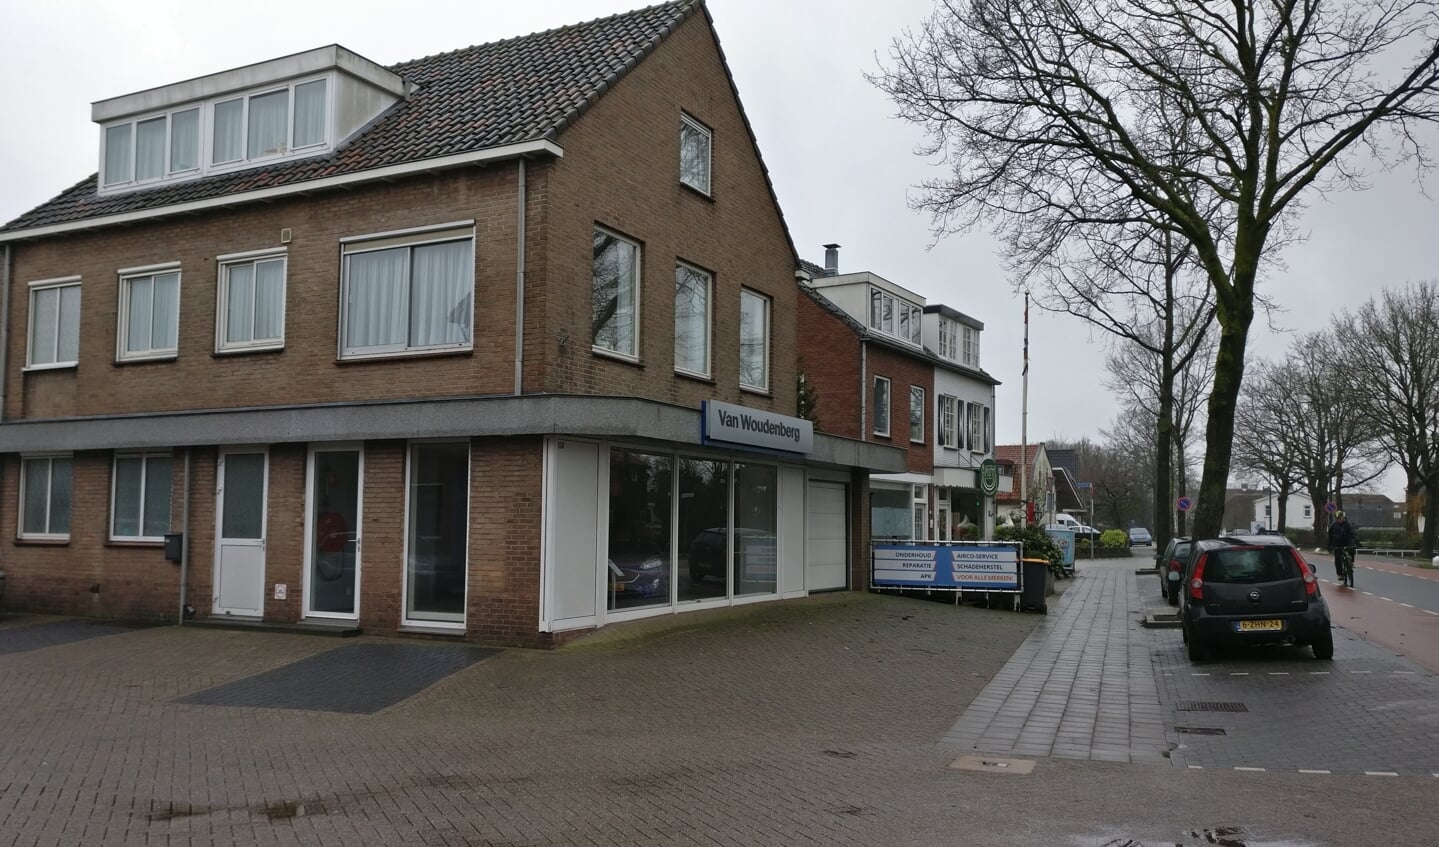 Later verhuisde Drogisterij van Rossum naar Dorpsweg 130 (naast garage van Woudenberg). Alleen het onderste gedeelte van de noordelijkste gevel is veranderd. 